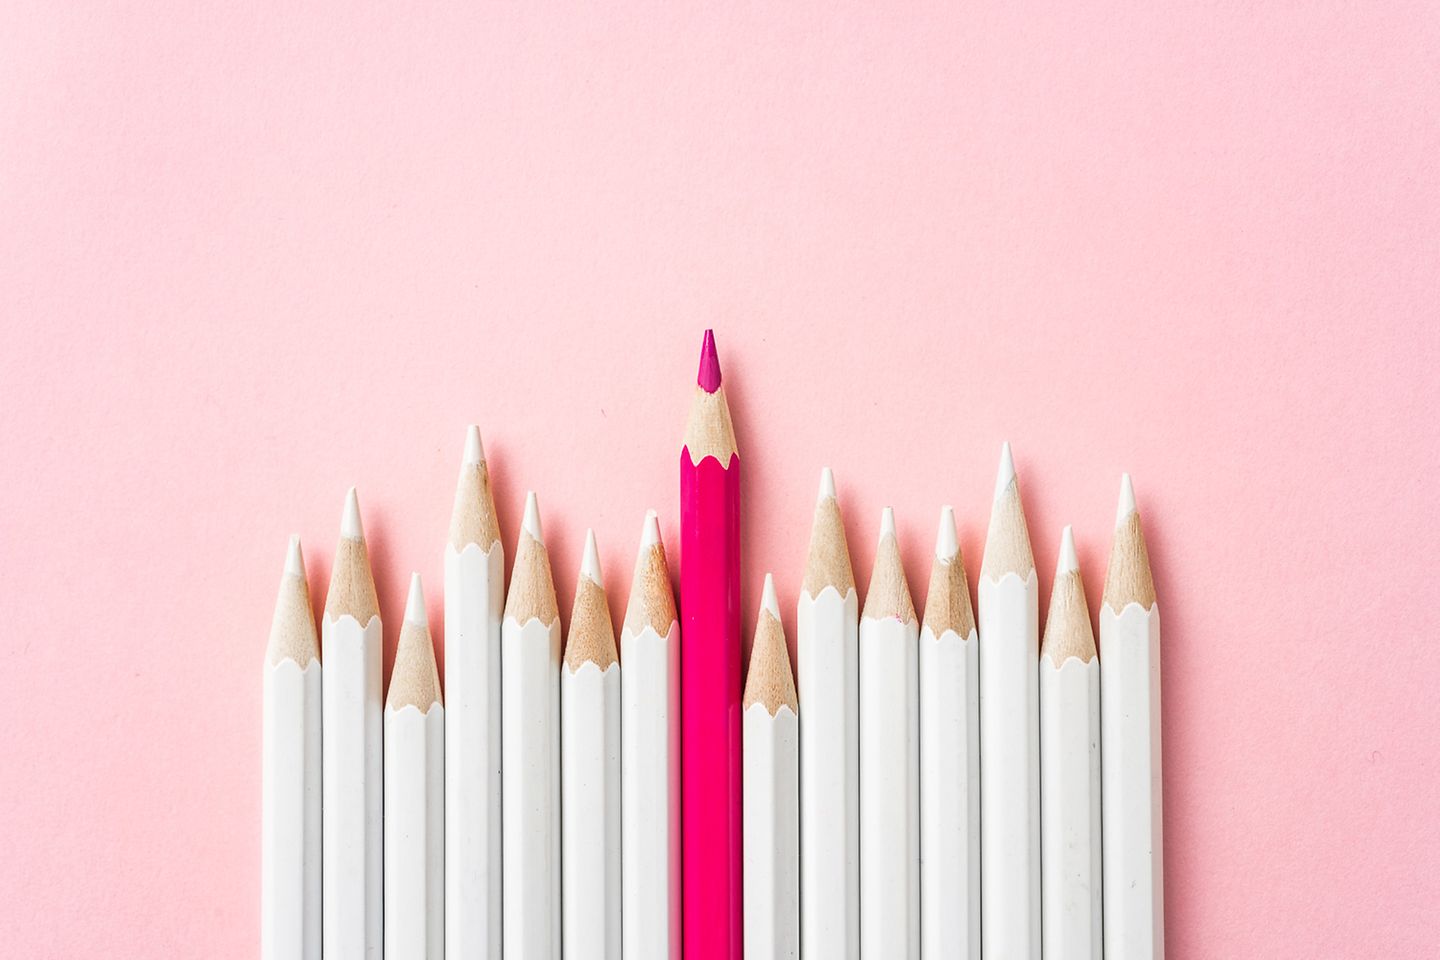 Reihe weißer Buntstifte mit einem pinkfarbenen Buntstift in der Mitte vor rosa Hintergrund.